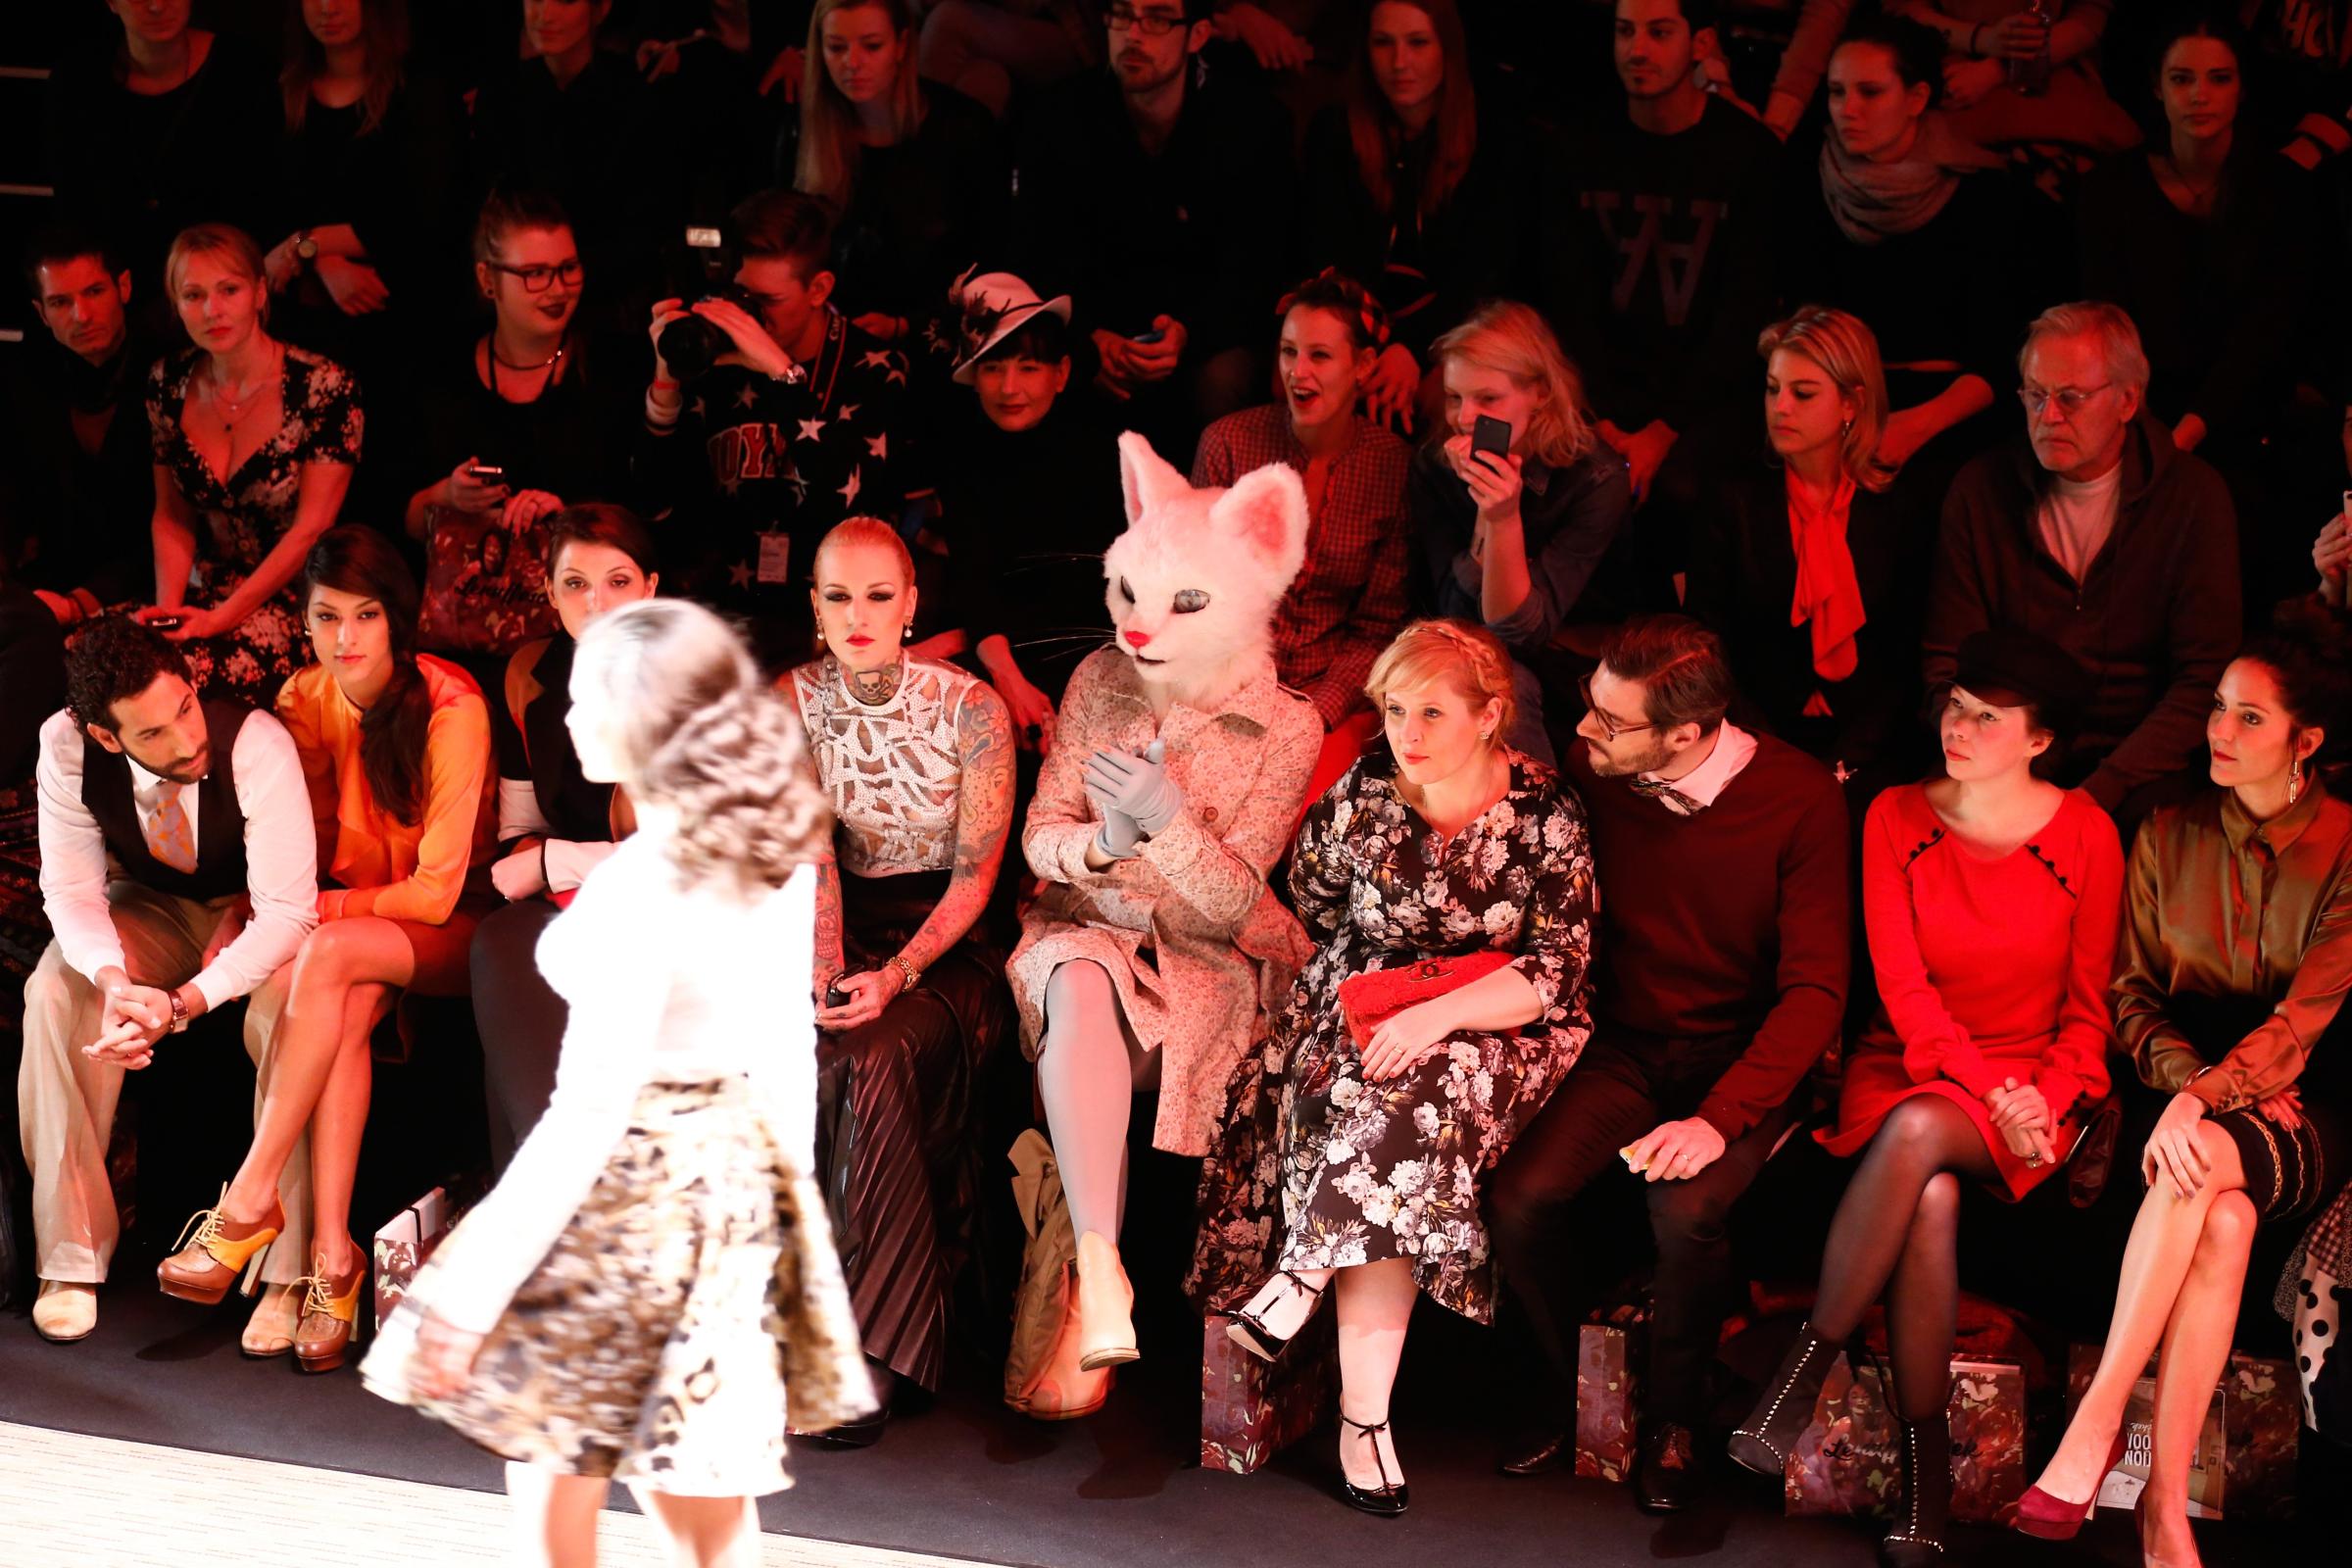 From left: Massimo Sinato, Rebecca Mir, Lexy Hill, Maite Kelly, Florent Raimond, guest, Johanna Klum attend the Rebekka Ruetz show during Mercedes-Benz Fashion Week in Berlin, Jan. 14, 2014.